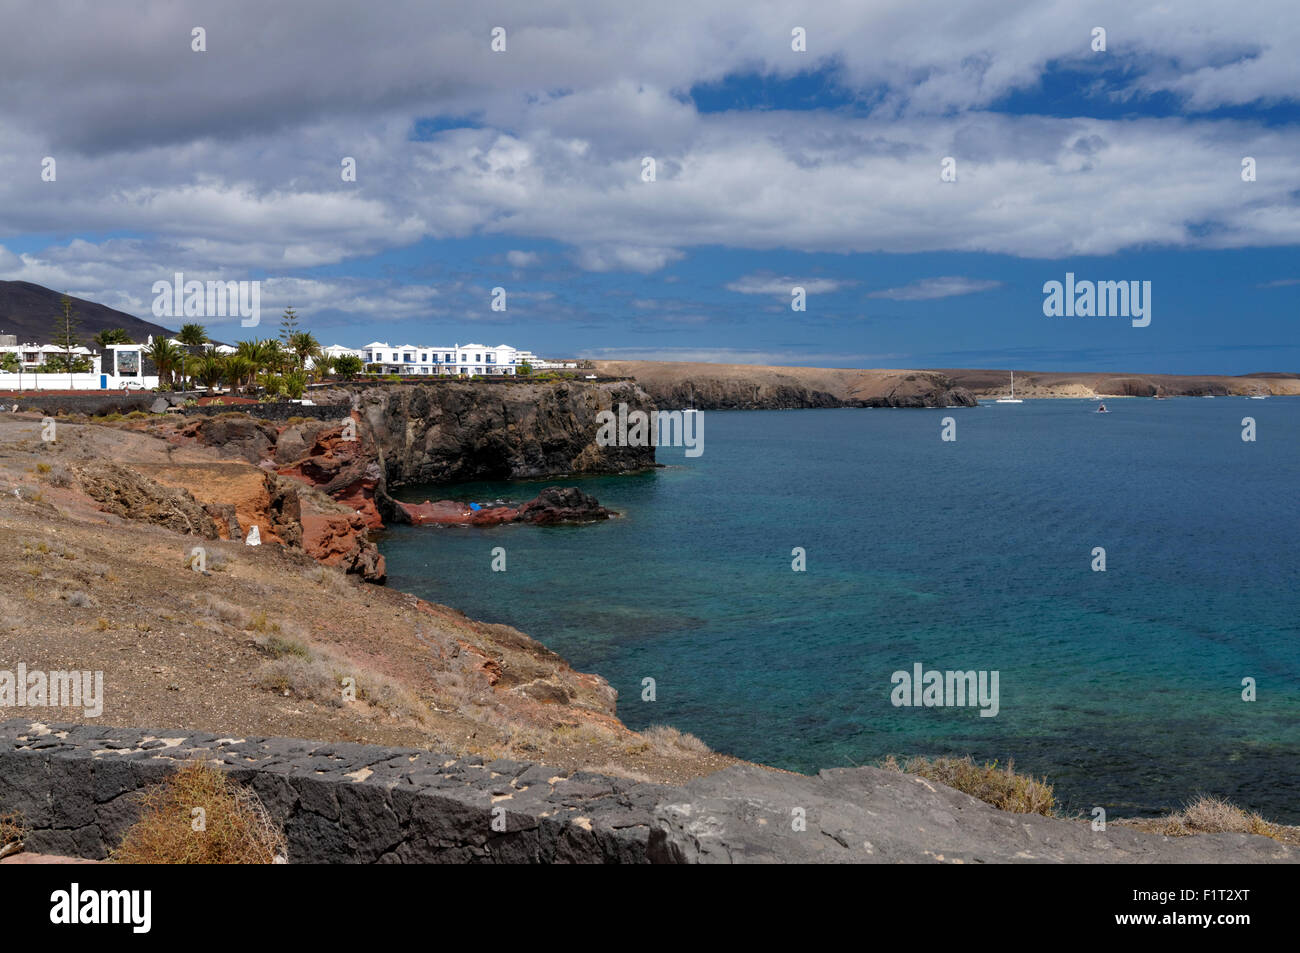 Rugged volcanic coastline, Las Coloradas, Playa Blanca, Lanzarote, Canary Islands, Spain. Stock Photo